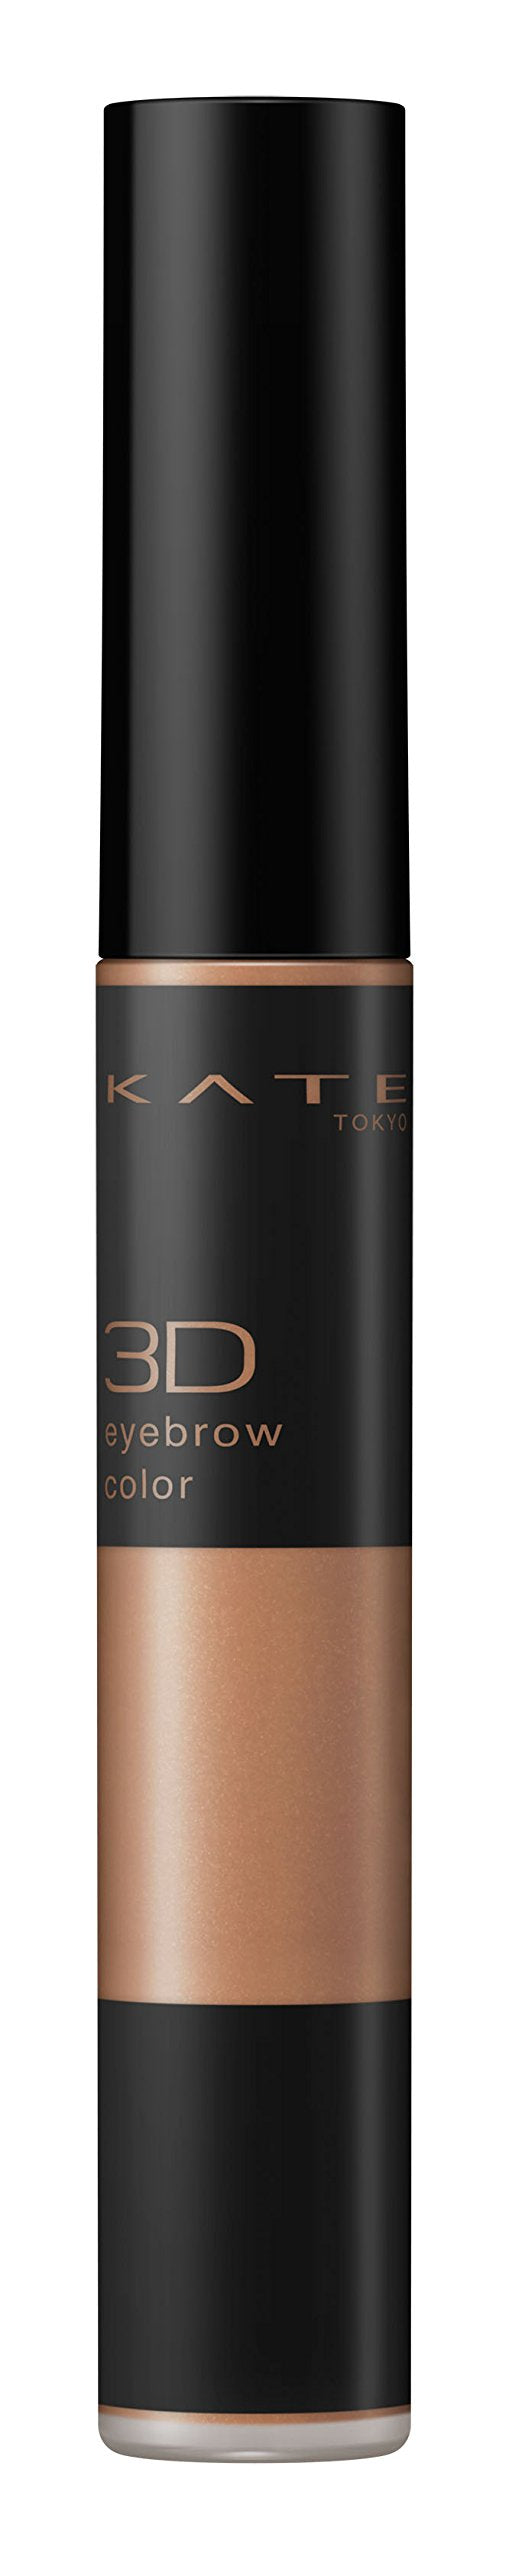 KATE Eyebrow Mascara 3D Eyebrow Color BR-1 Single Item Brown 6.3g